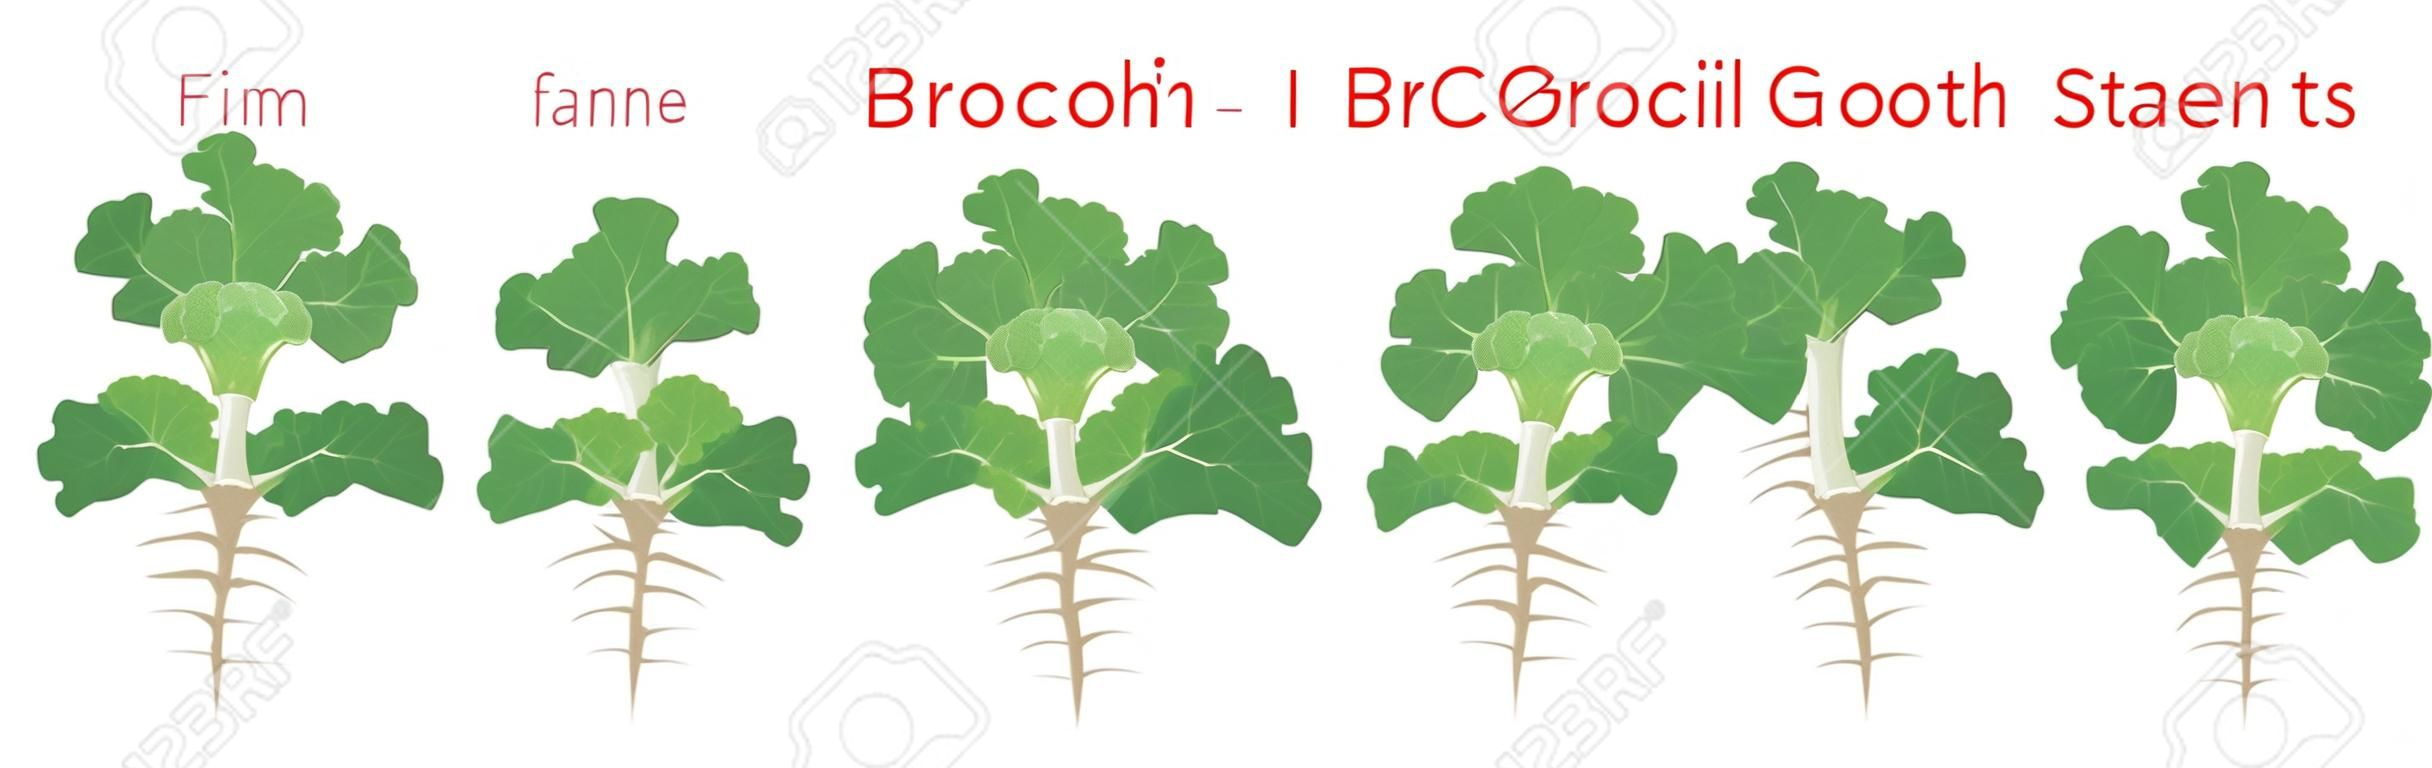 La croissance des plantes de brocoli met en scène des éléments infographiques. Processus de croissance du brocoli à partir de graines, pousse à la plante mature avec des racines, cycle de vie de la plante isolée sur fond blanc illustration vectorielle plate